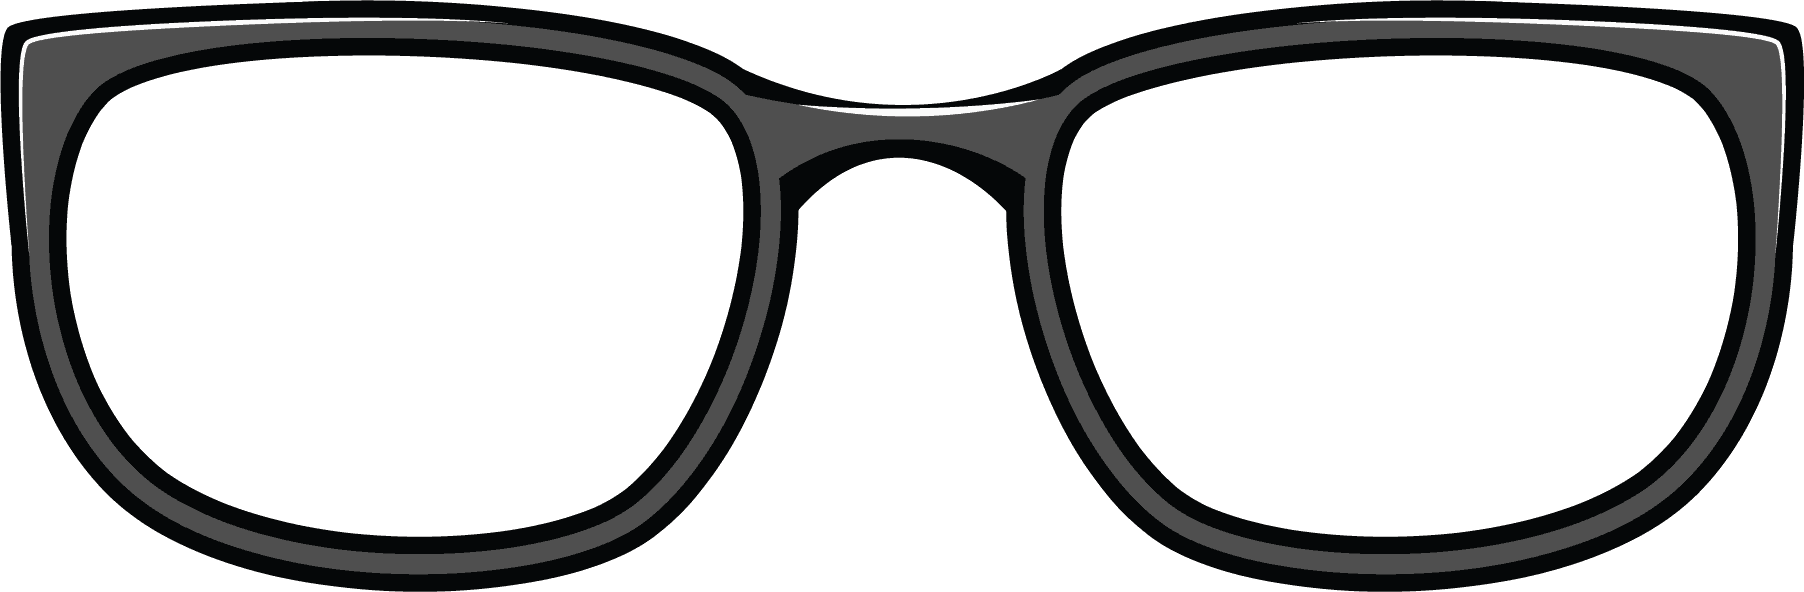 Nerd glasses clip art